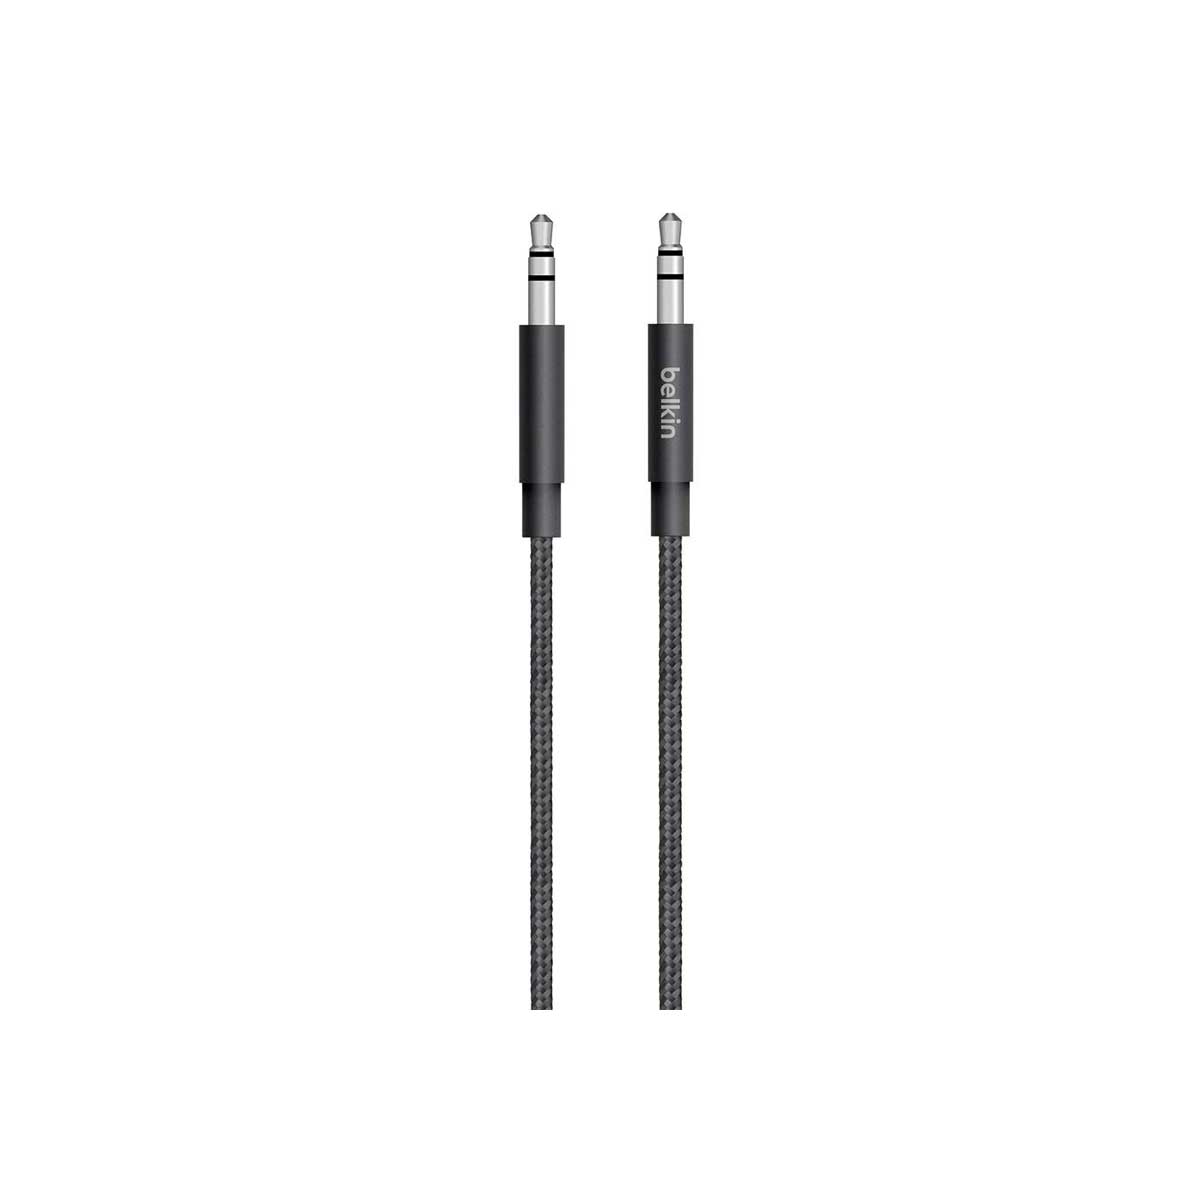 Belkin - MIXIT Metallic AUX Cable - Black